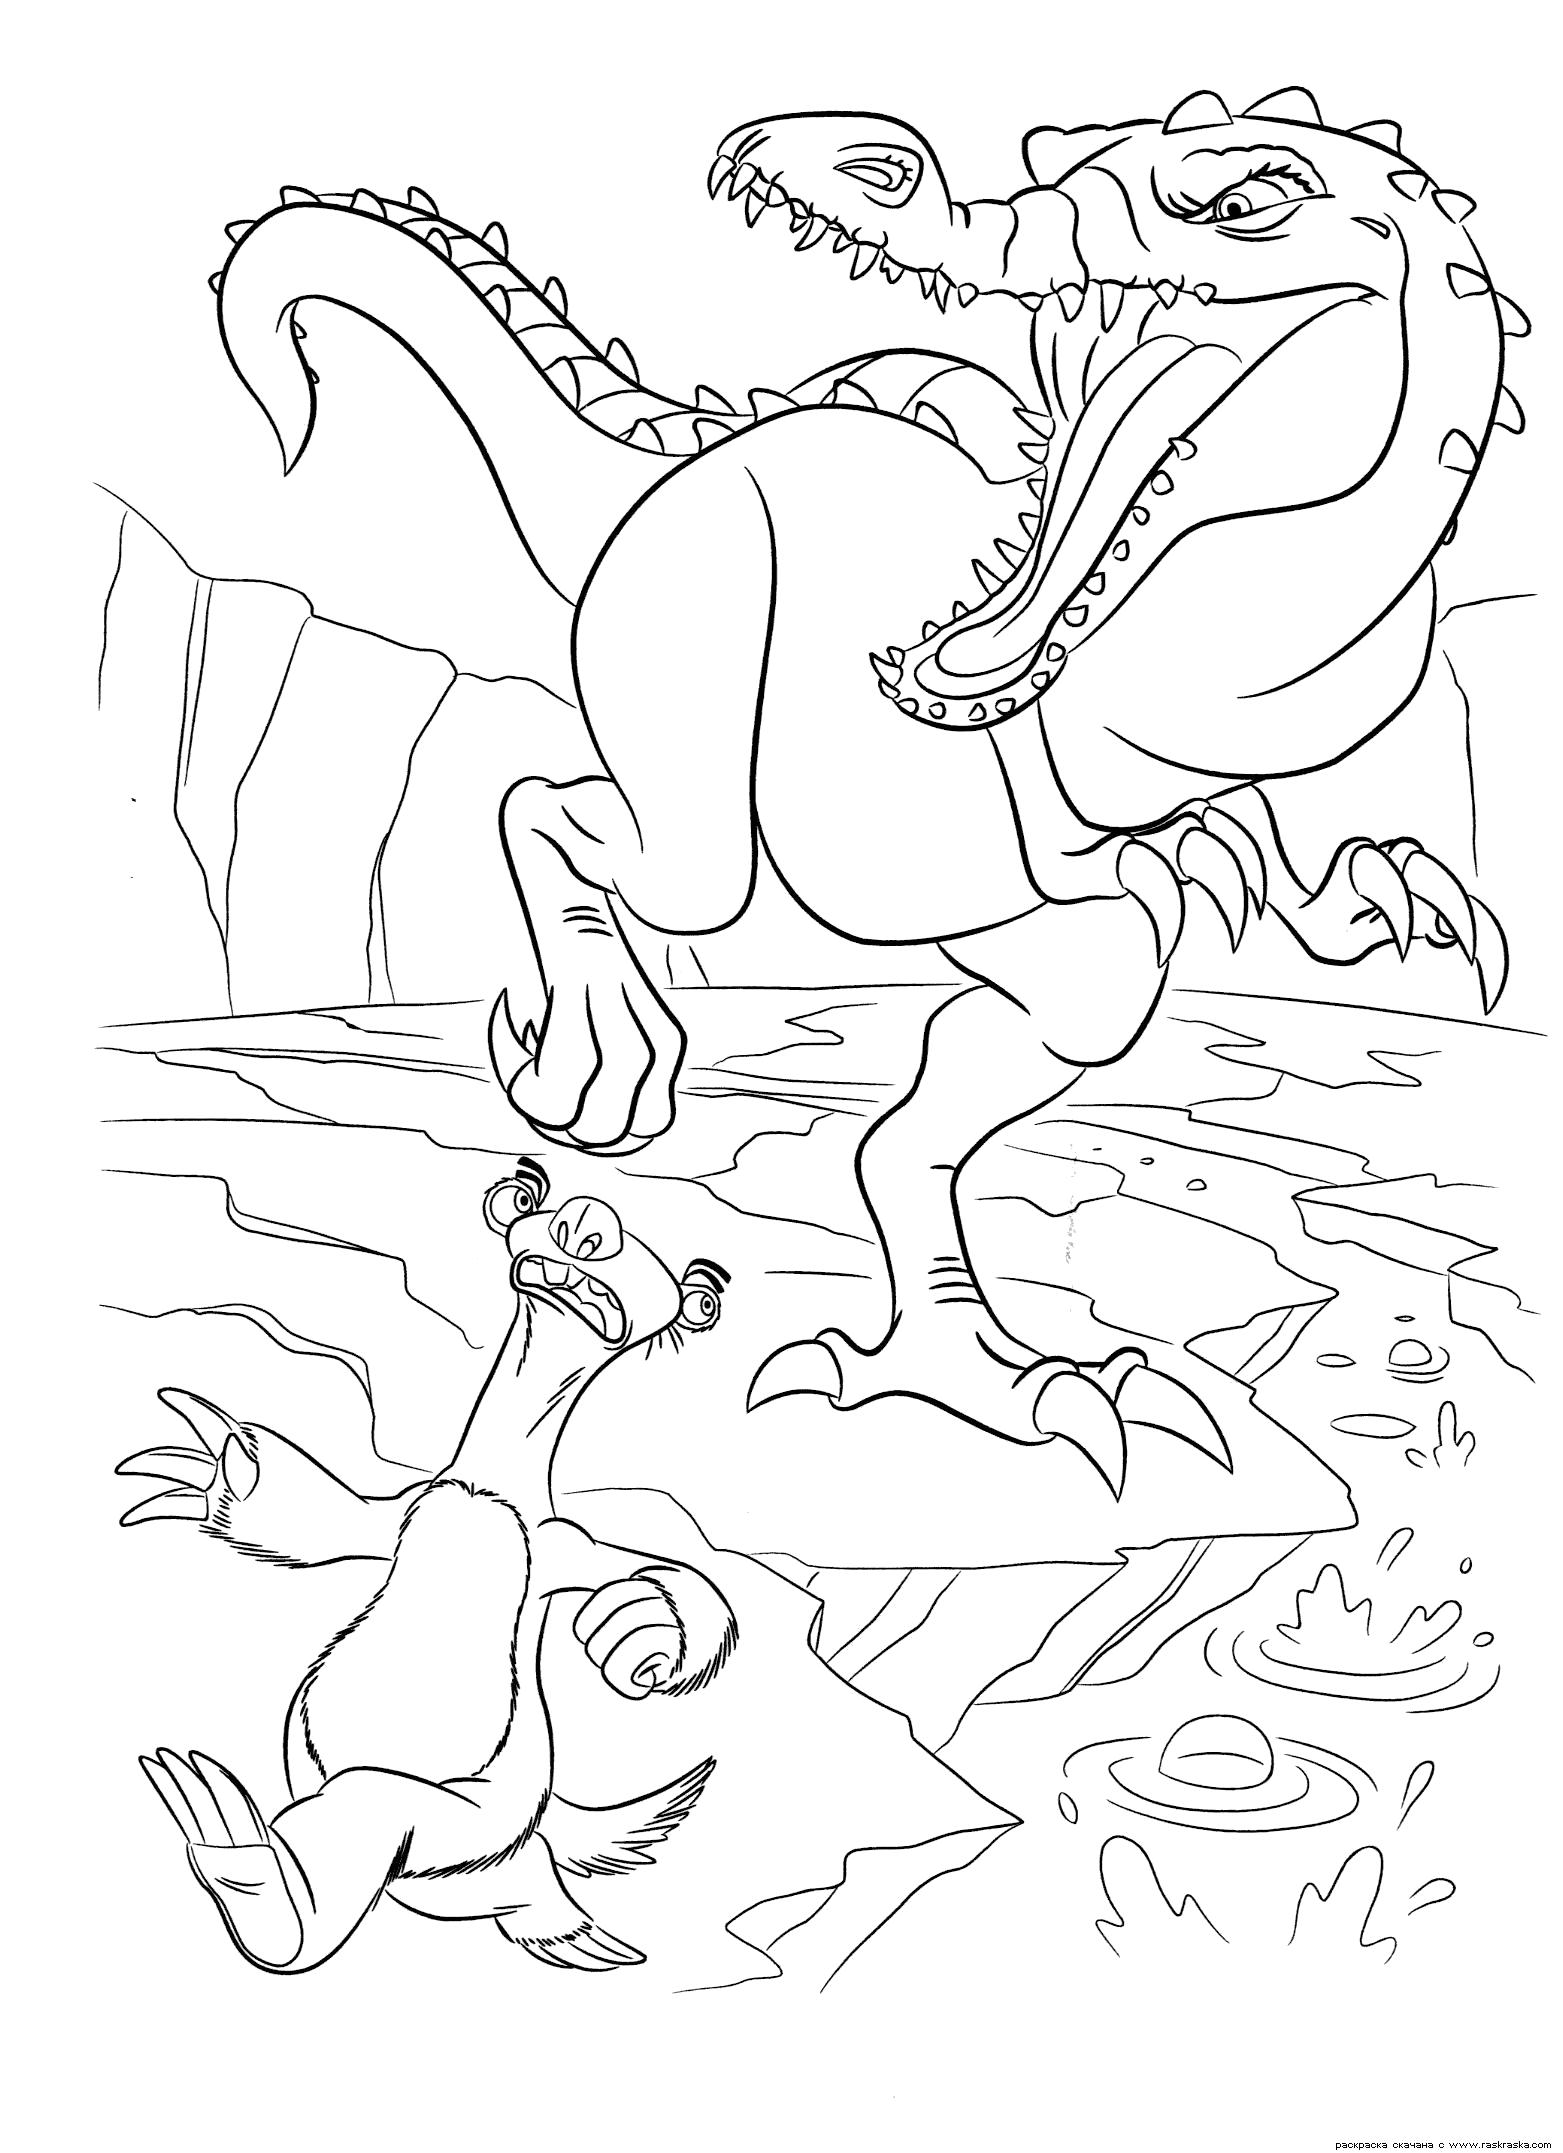 Название: Раскраска Раскраска Руди и Сид. Раскраска Огромный динозавр из мультфильма Ледниковый период 3:Эра динозавров. Скачать бесплатно раскраски динозавра и ленивца для ребенка картинки. Категория: динозавр. Теги: динозавр.